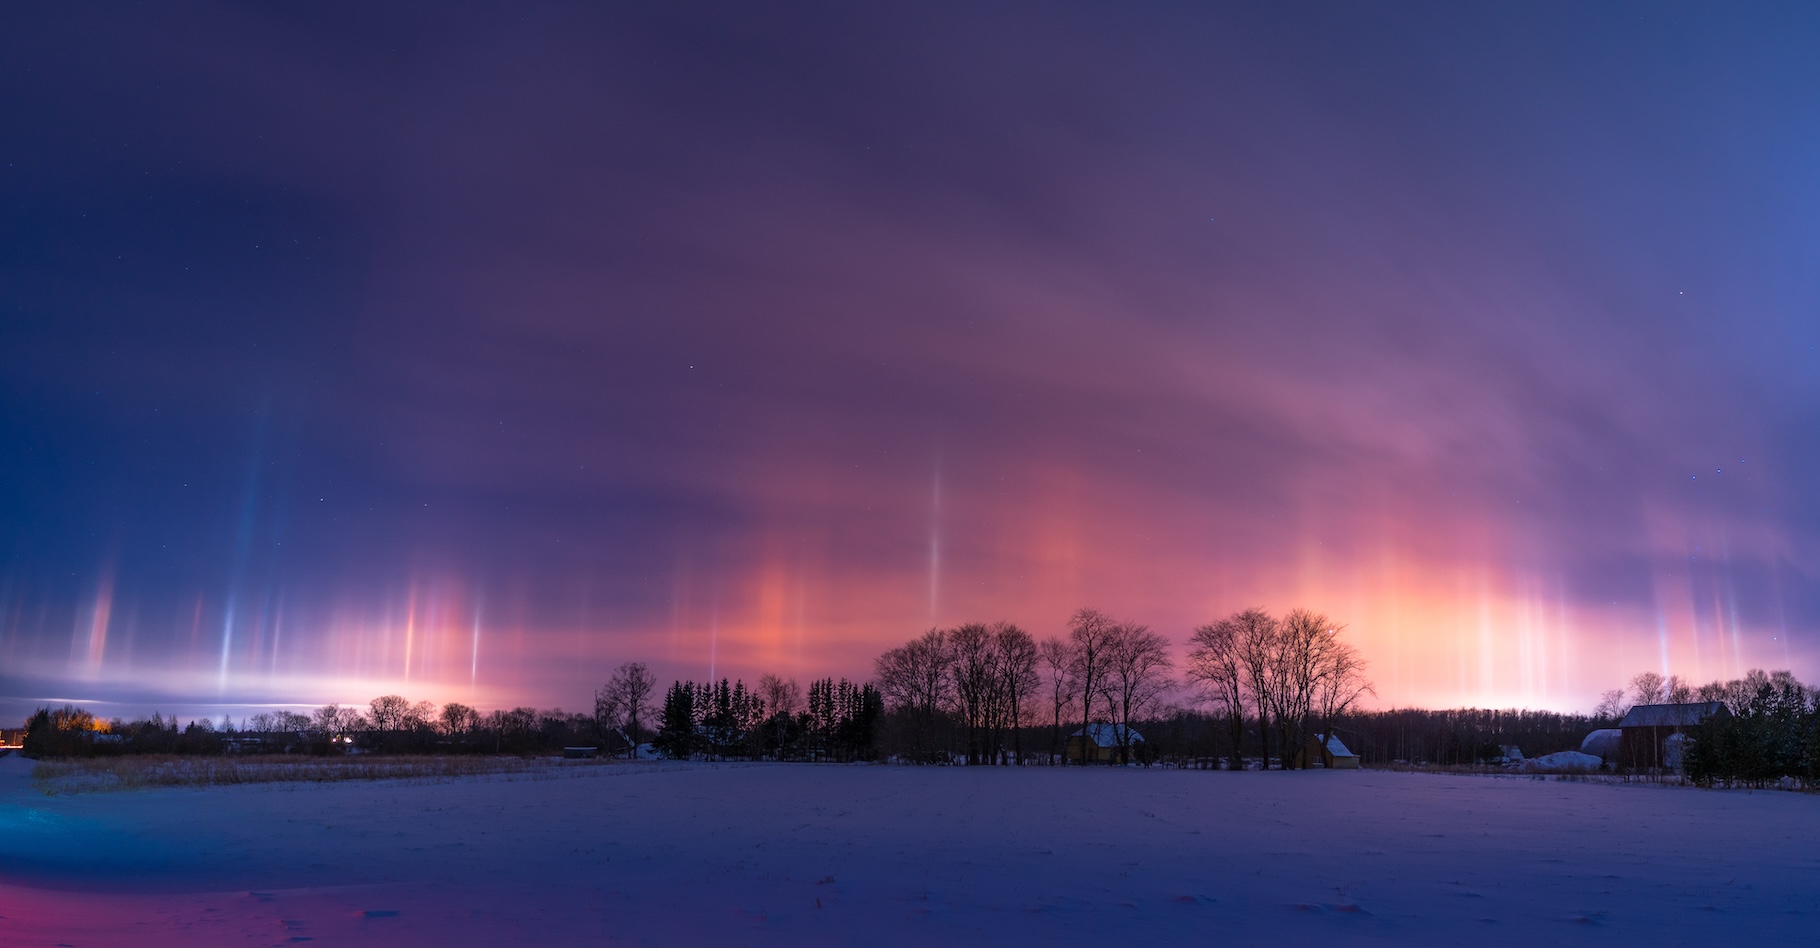 Les piliers lumineux qui se dressent parfois dans le ciel par temps froid ne sont pas des aurores boréales. Ils sont dus à la pollution lumineuse. © Aleksandr, Adobe Stock